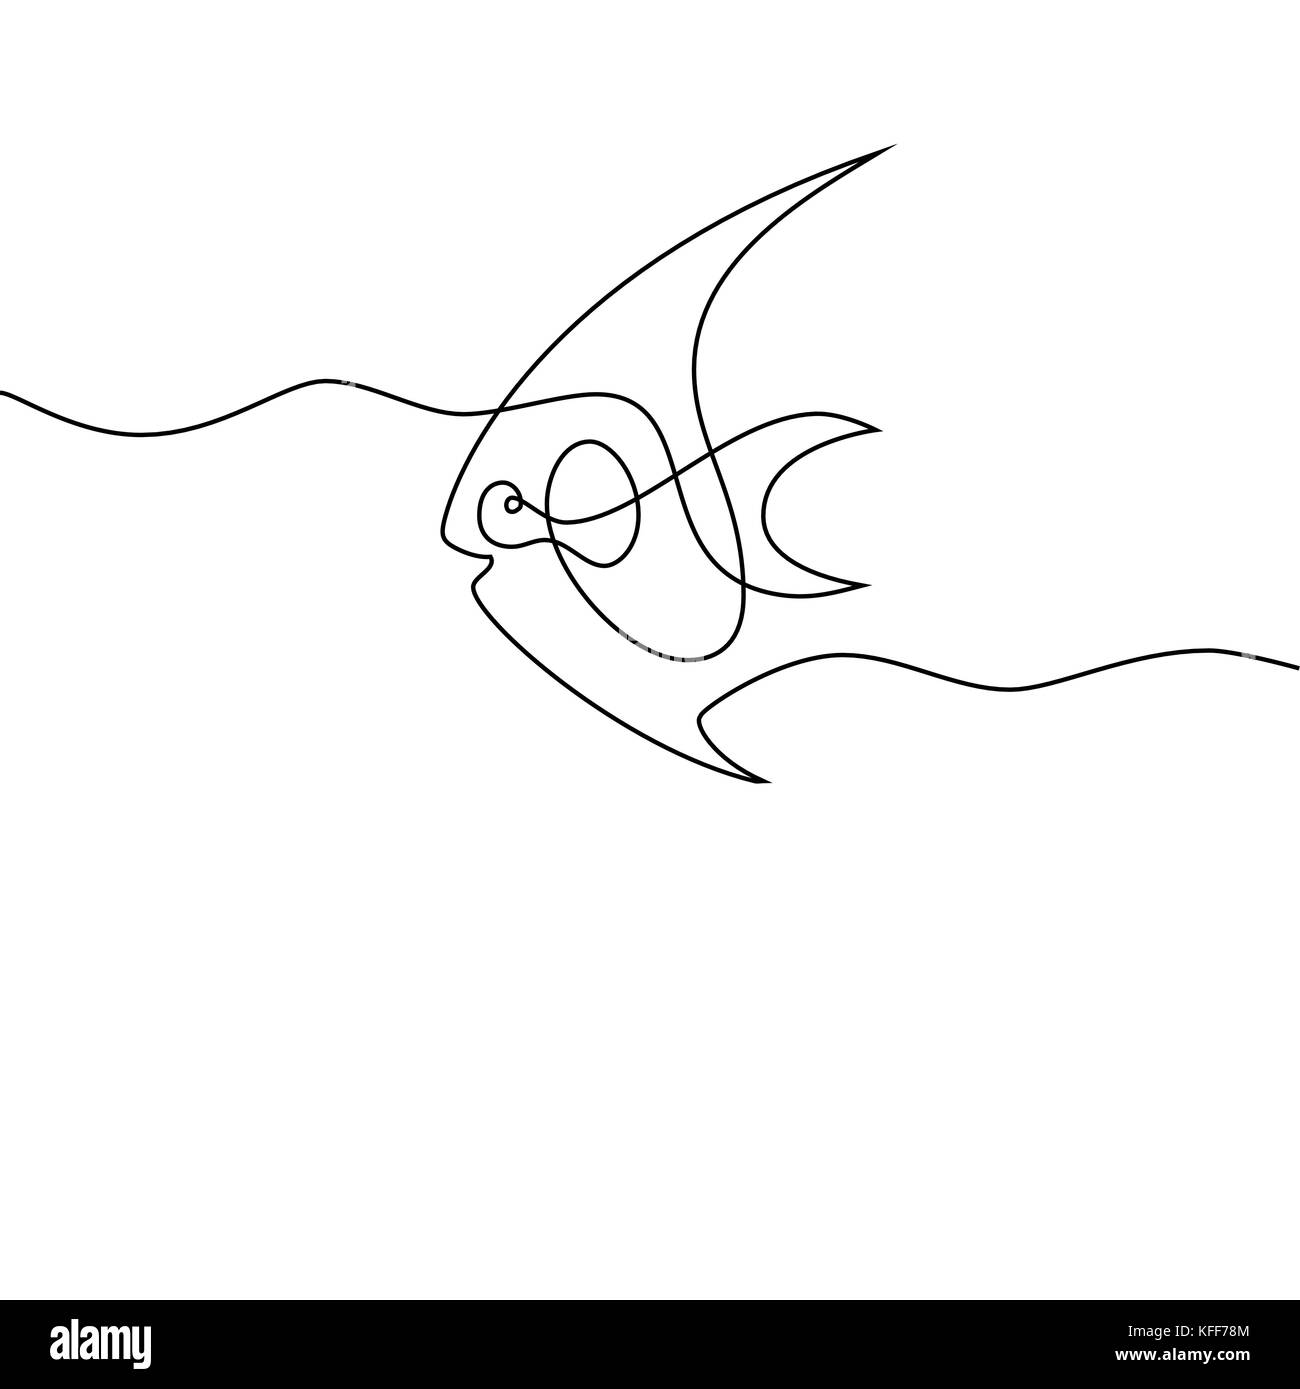 Dessin d'une ligne continue. Logo de poissons exotiques. Vector illustration noir et blanc. Concept de logo, bannière, carte, affiche, flyer Illustration de Vecteur